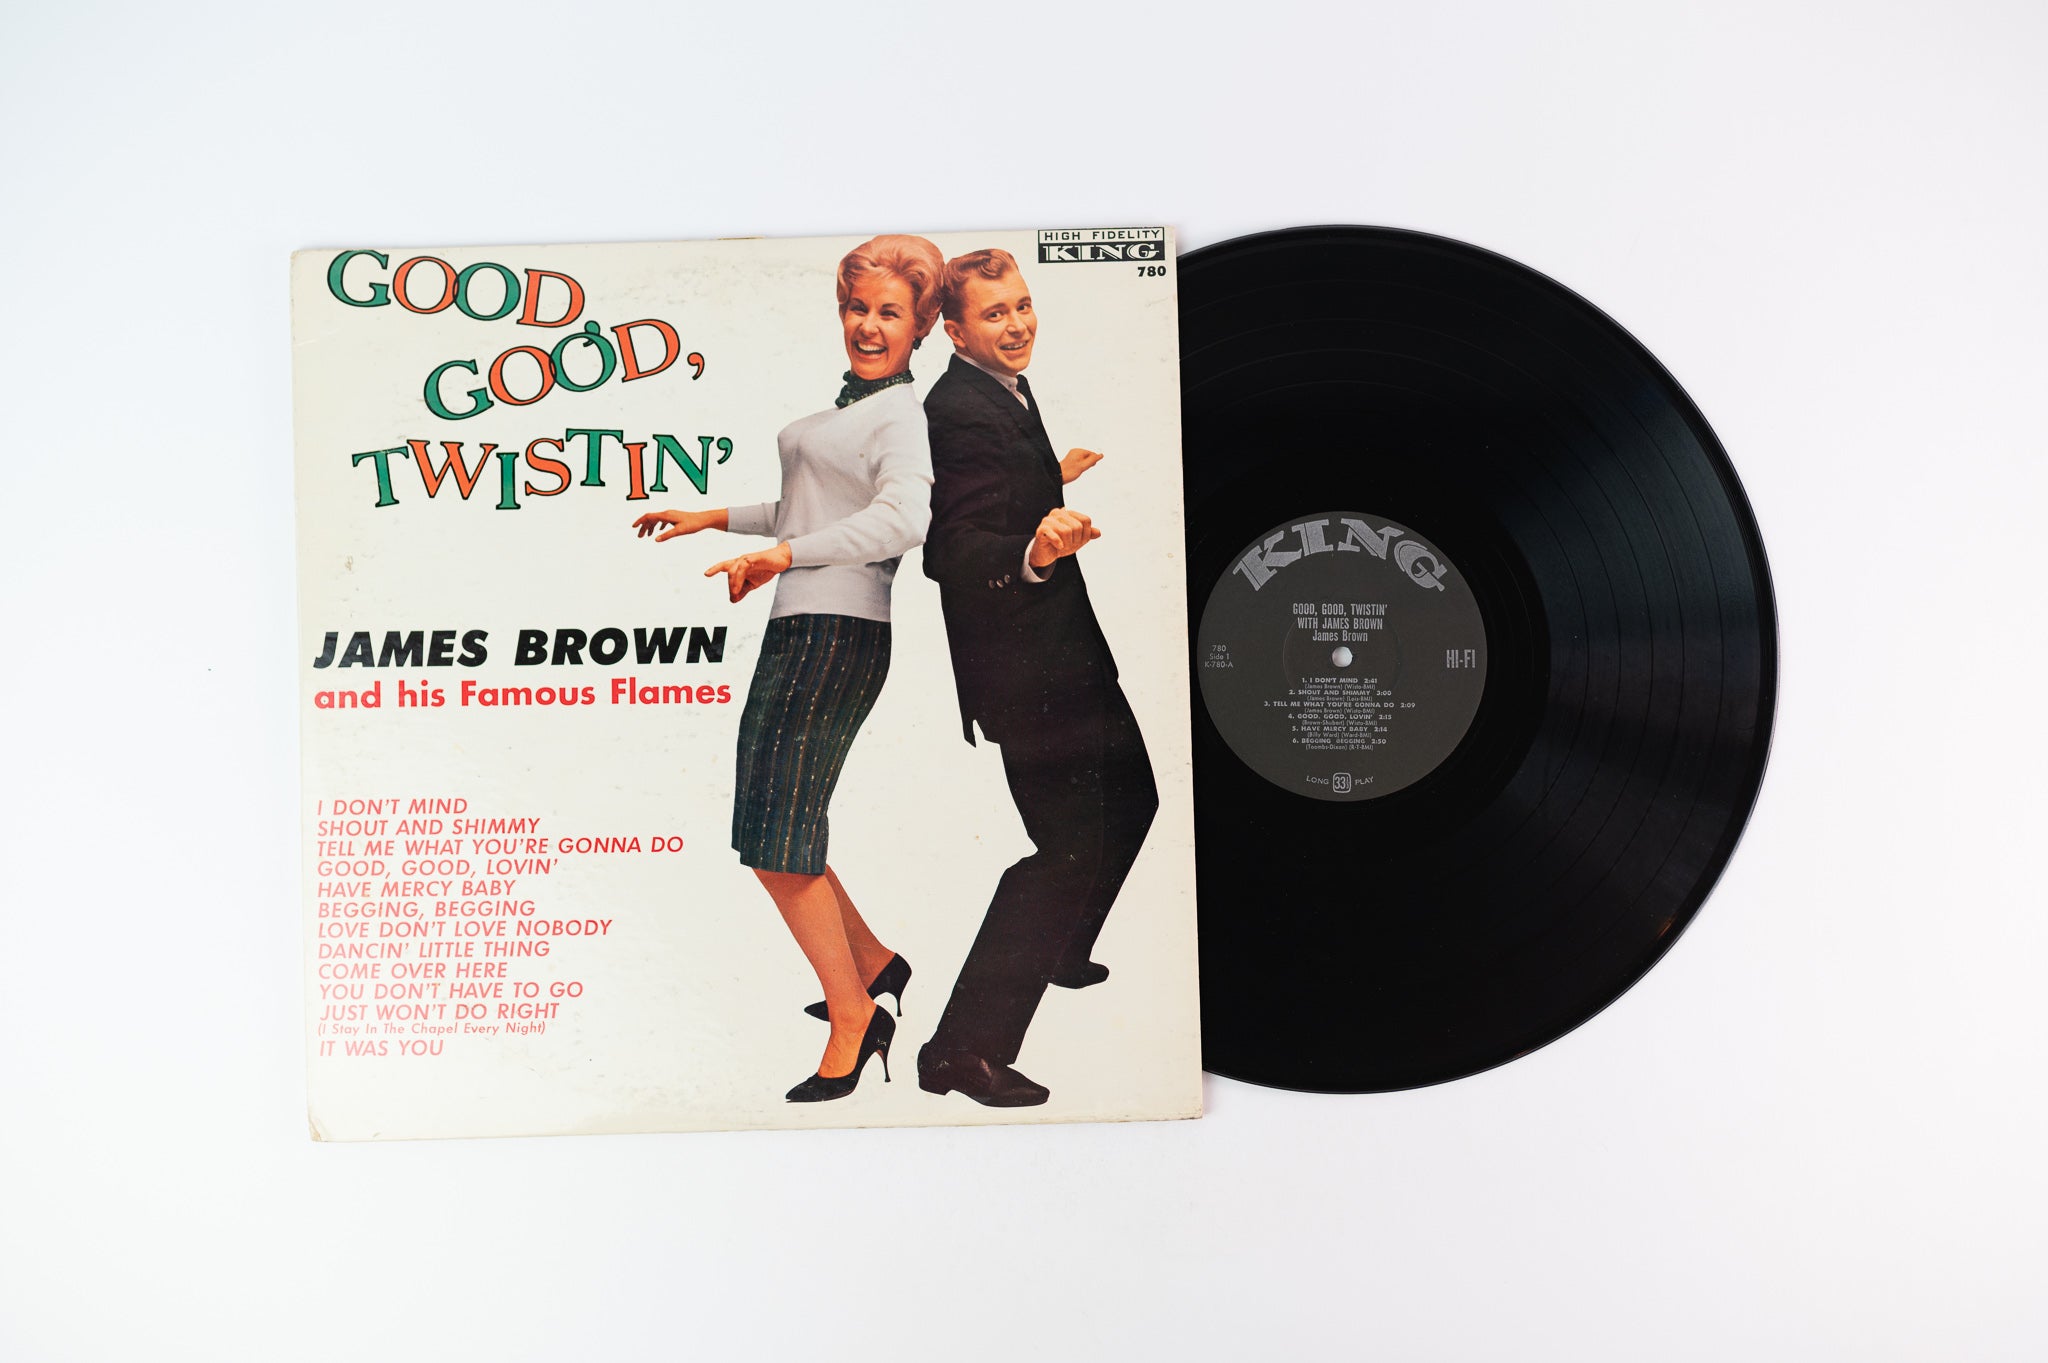 James Brown - Good, Good, Twistin' With James Brown on King 780